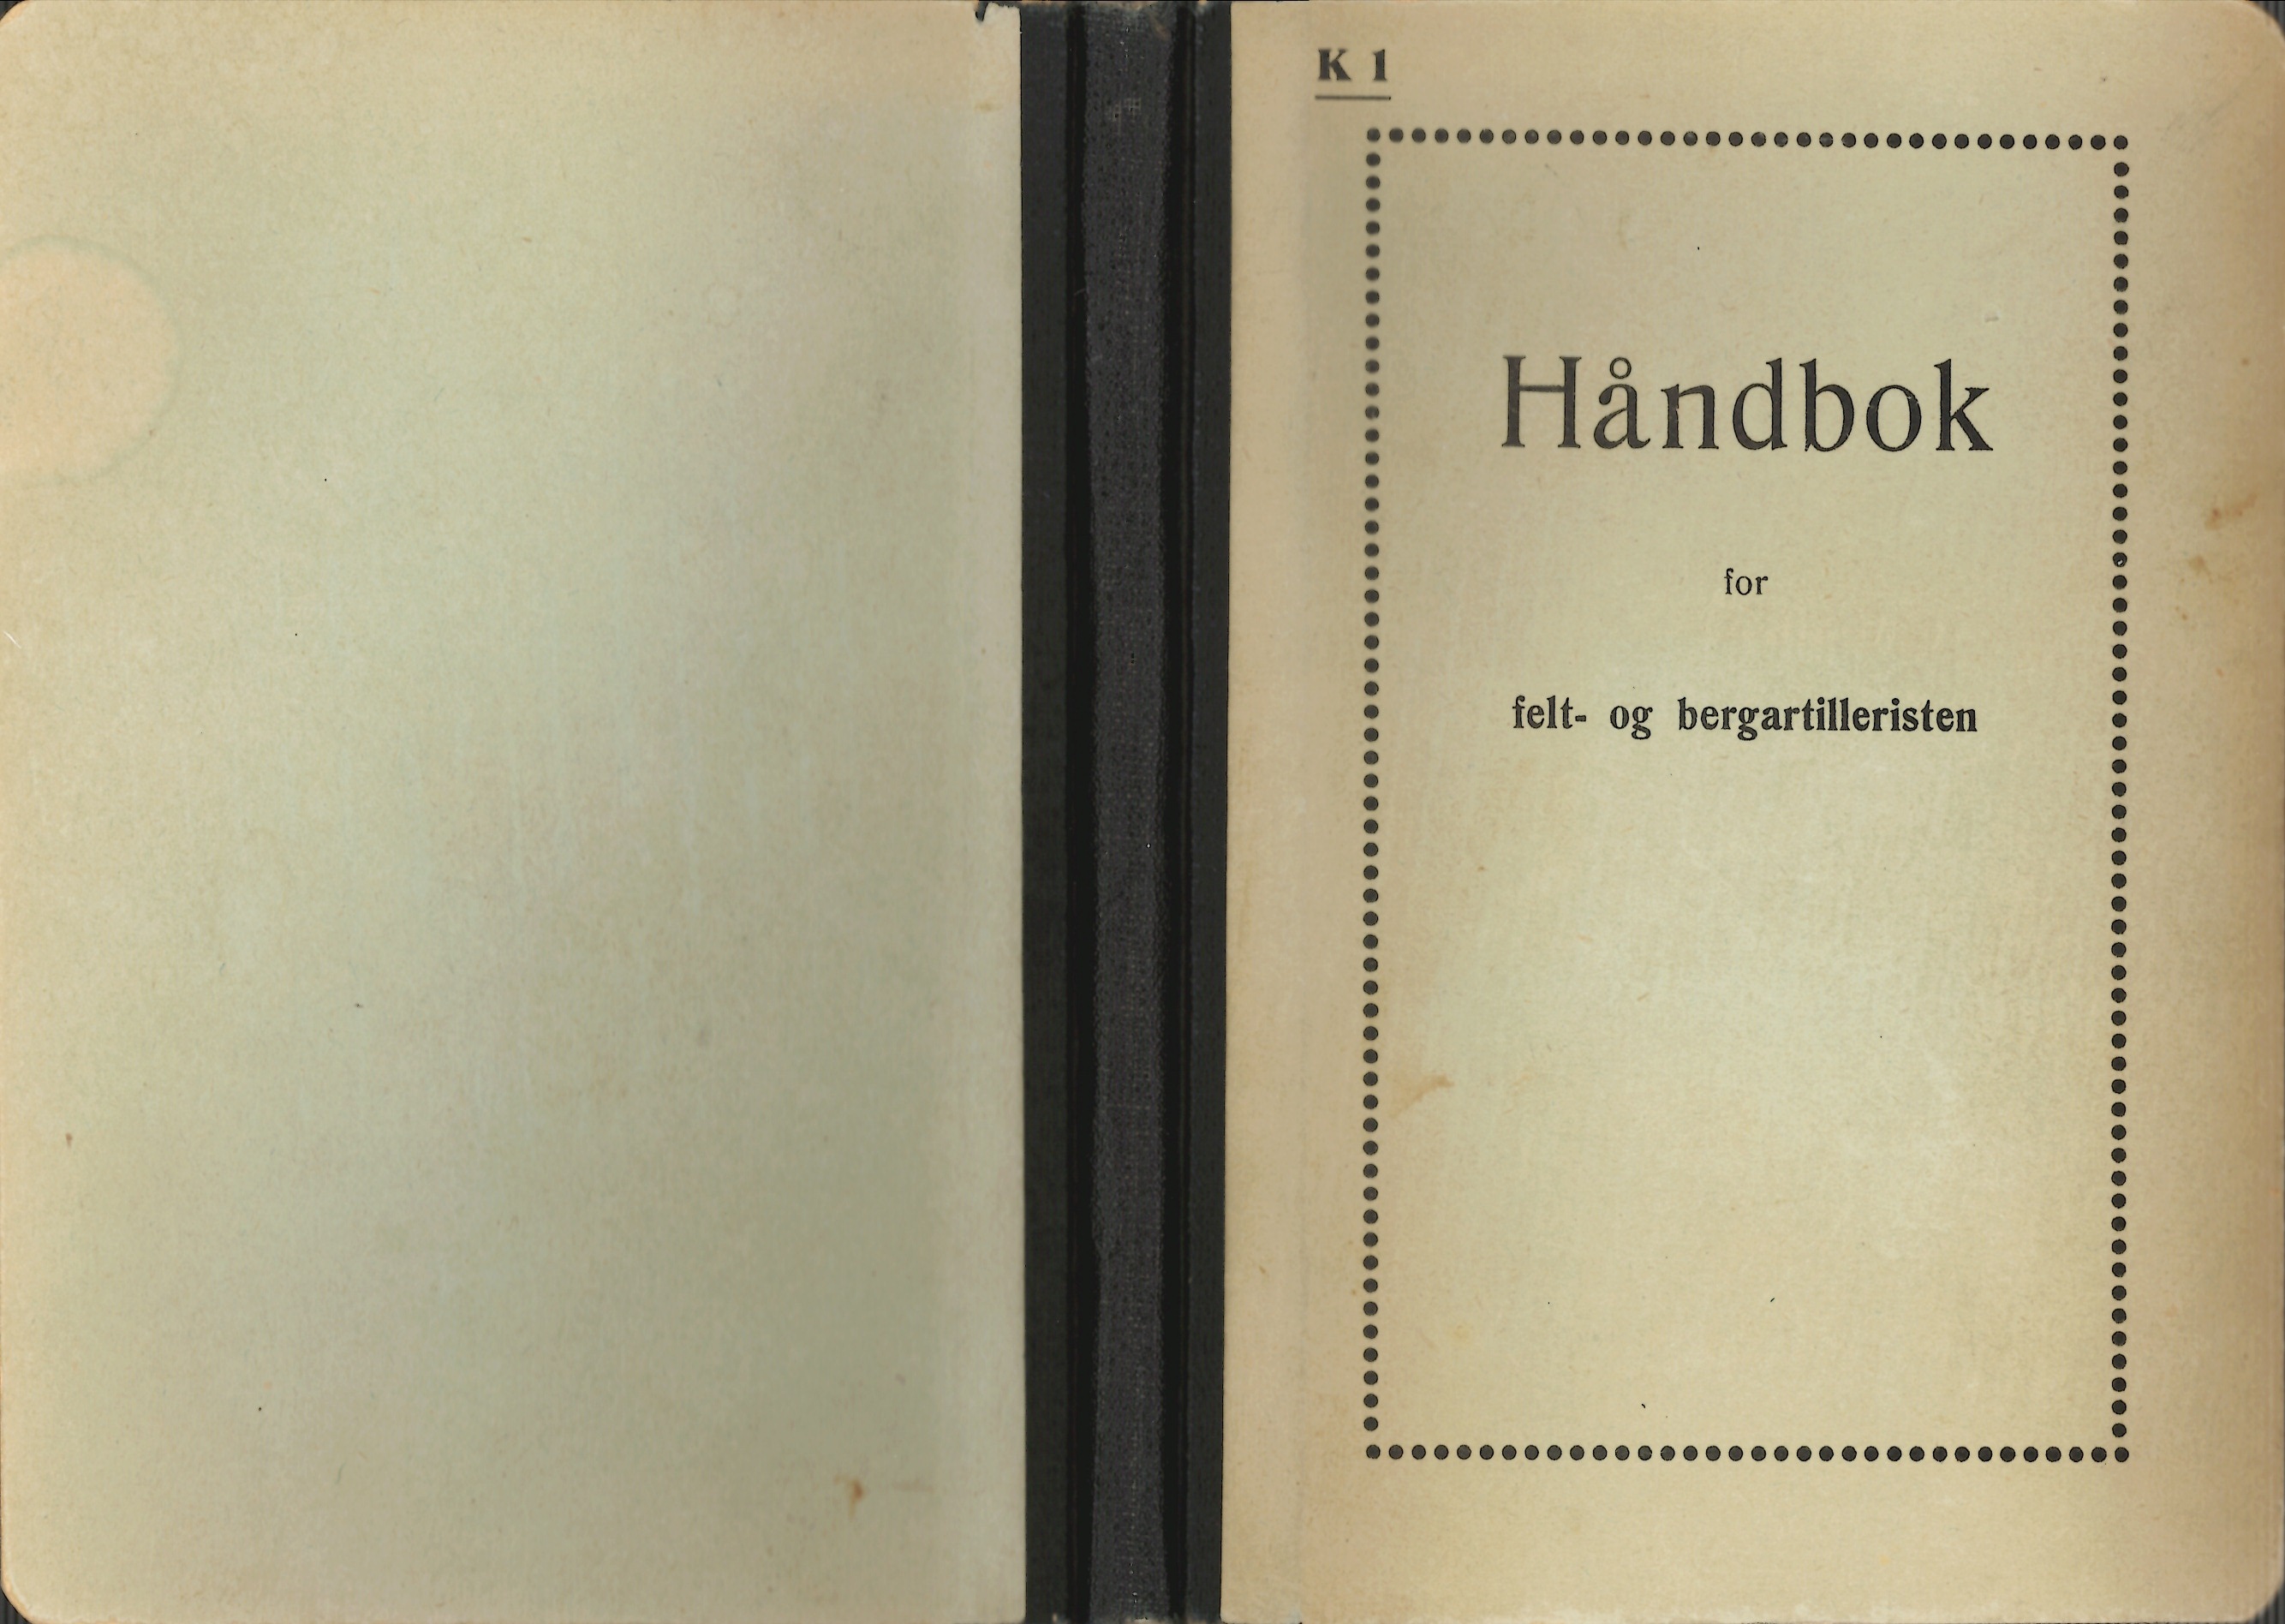 ./doc/reglement/K1/K1-Handbok-Felt-og-bergartilleristen-1938-1.jpg